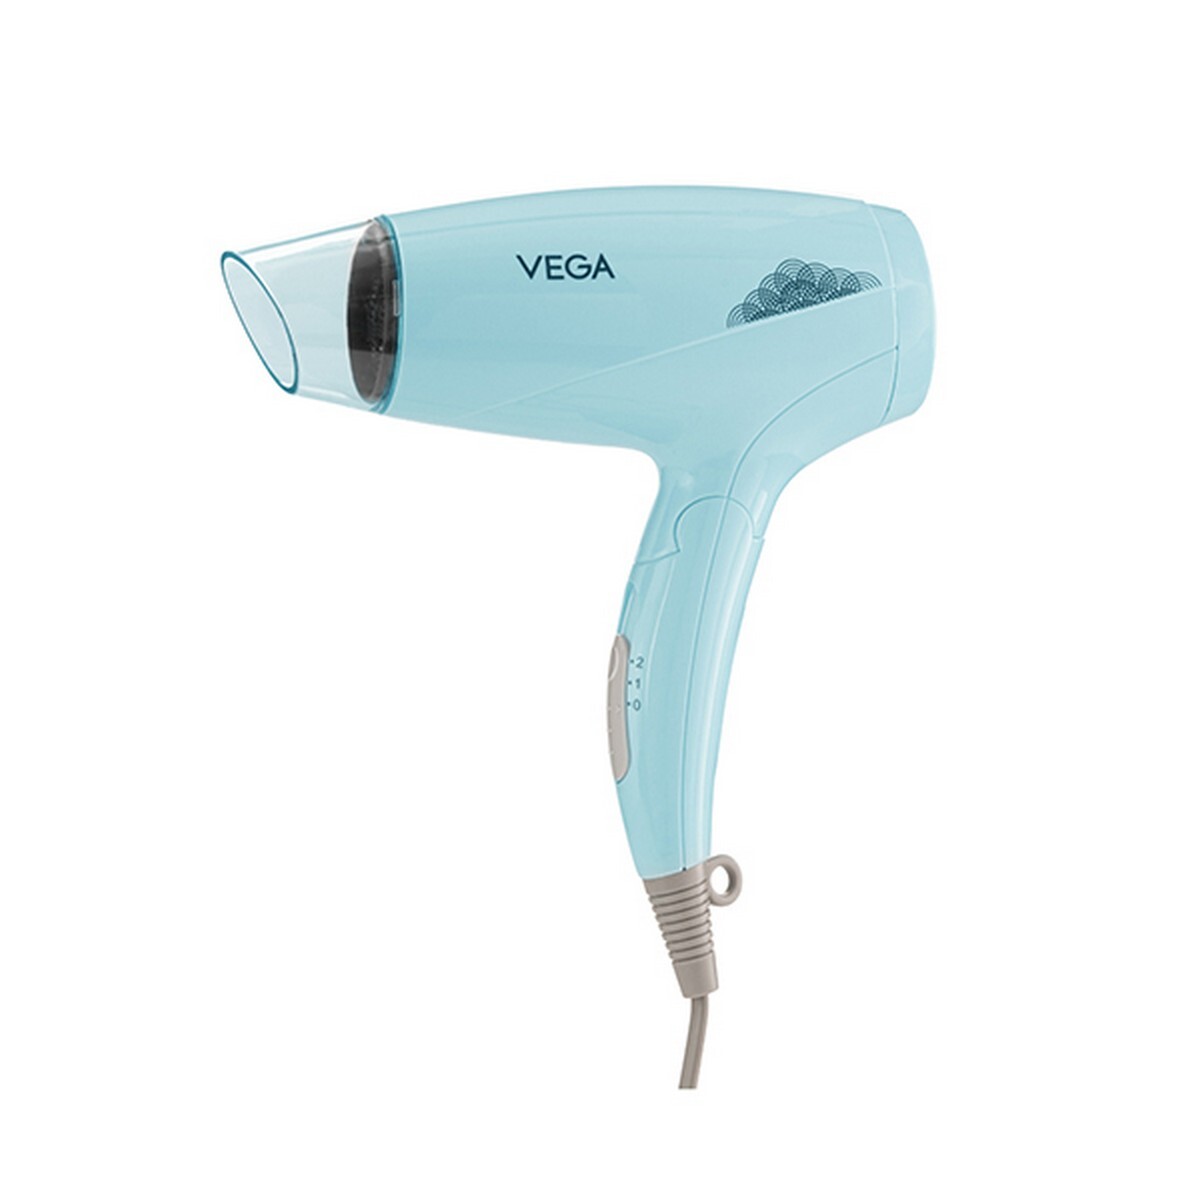 Vega Style Swift Hair Dryer VHDH-31 1200 W